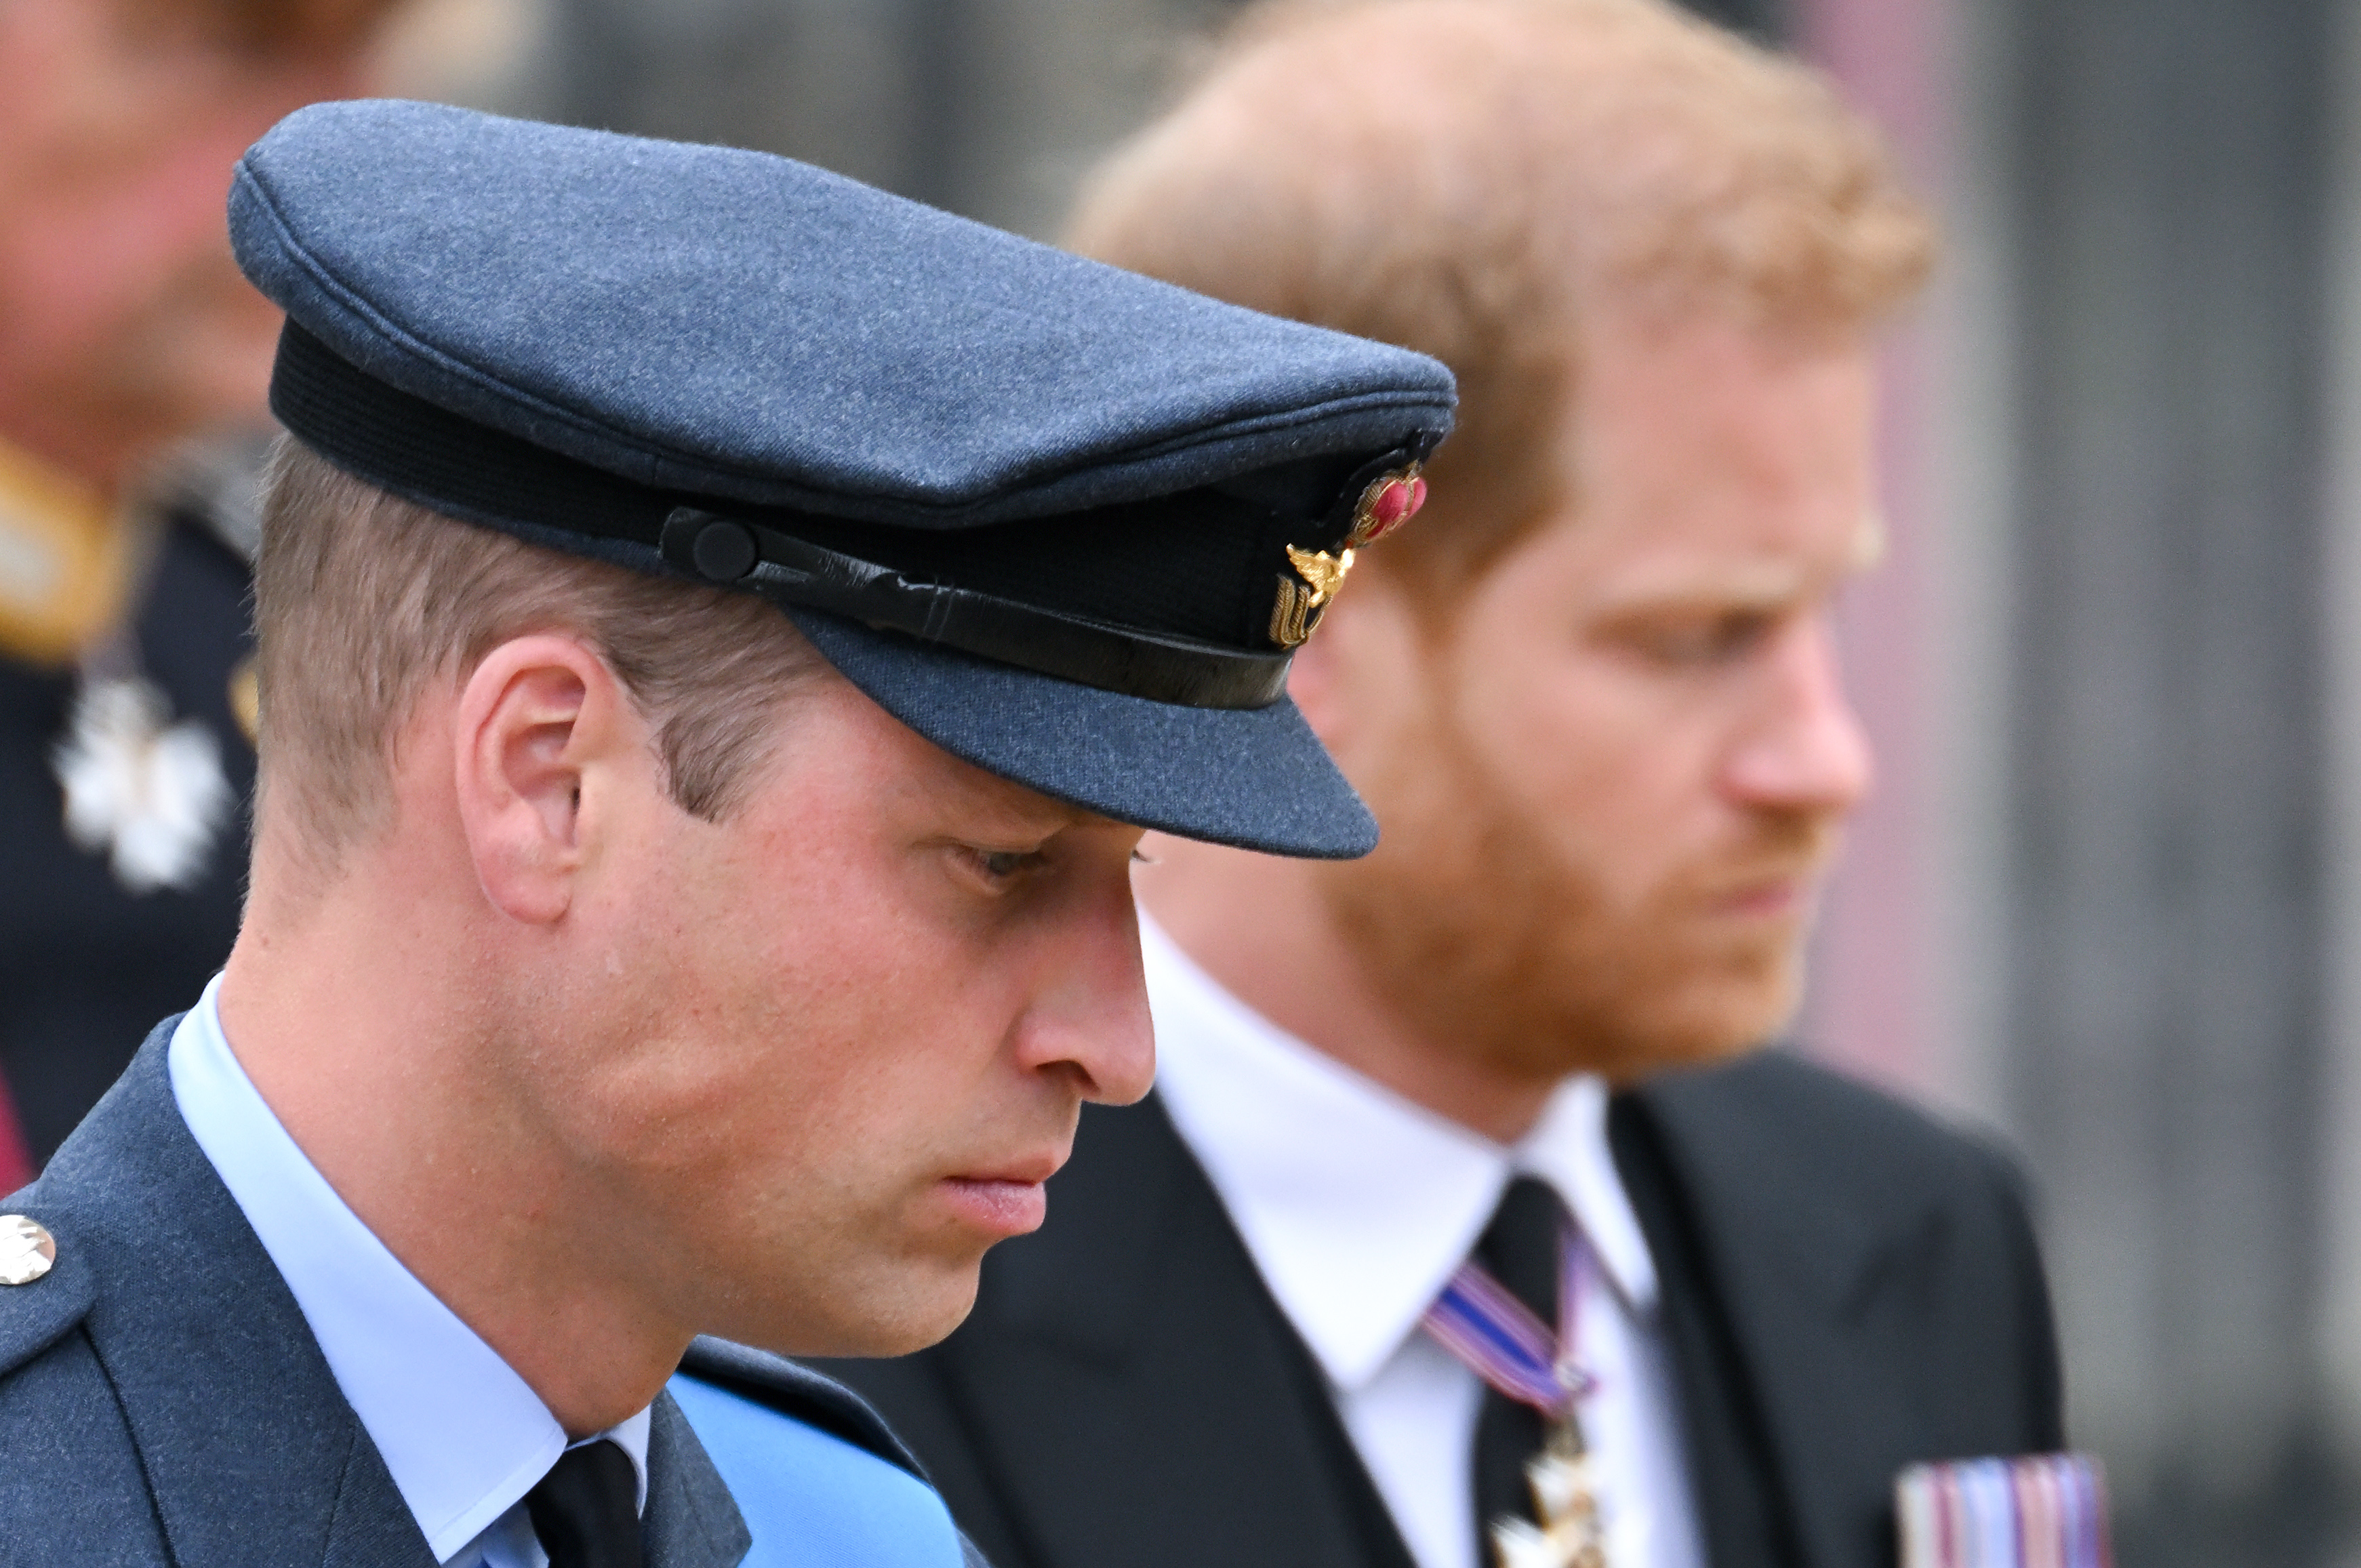 El príncipe William y el príncipe Harry durante el Funeral de Estado de la reina Elizabeth II en la Abadía de Westminster el 19 de septiembre de 2022 en Londres, Inglaterra | Foto: Getty Images